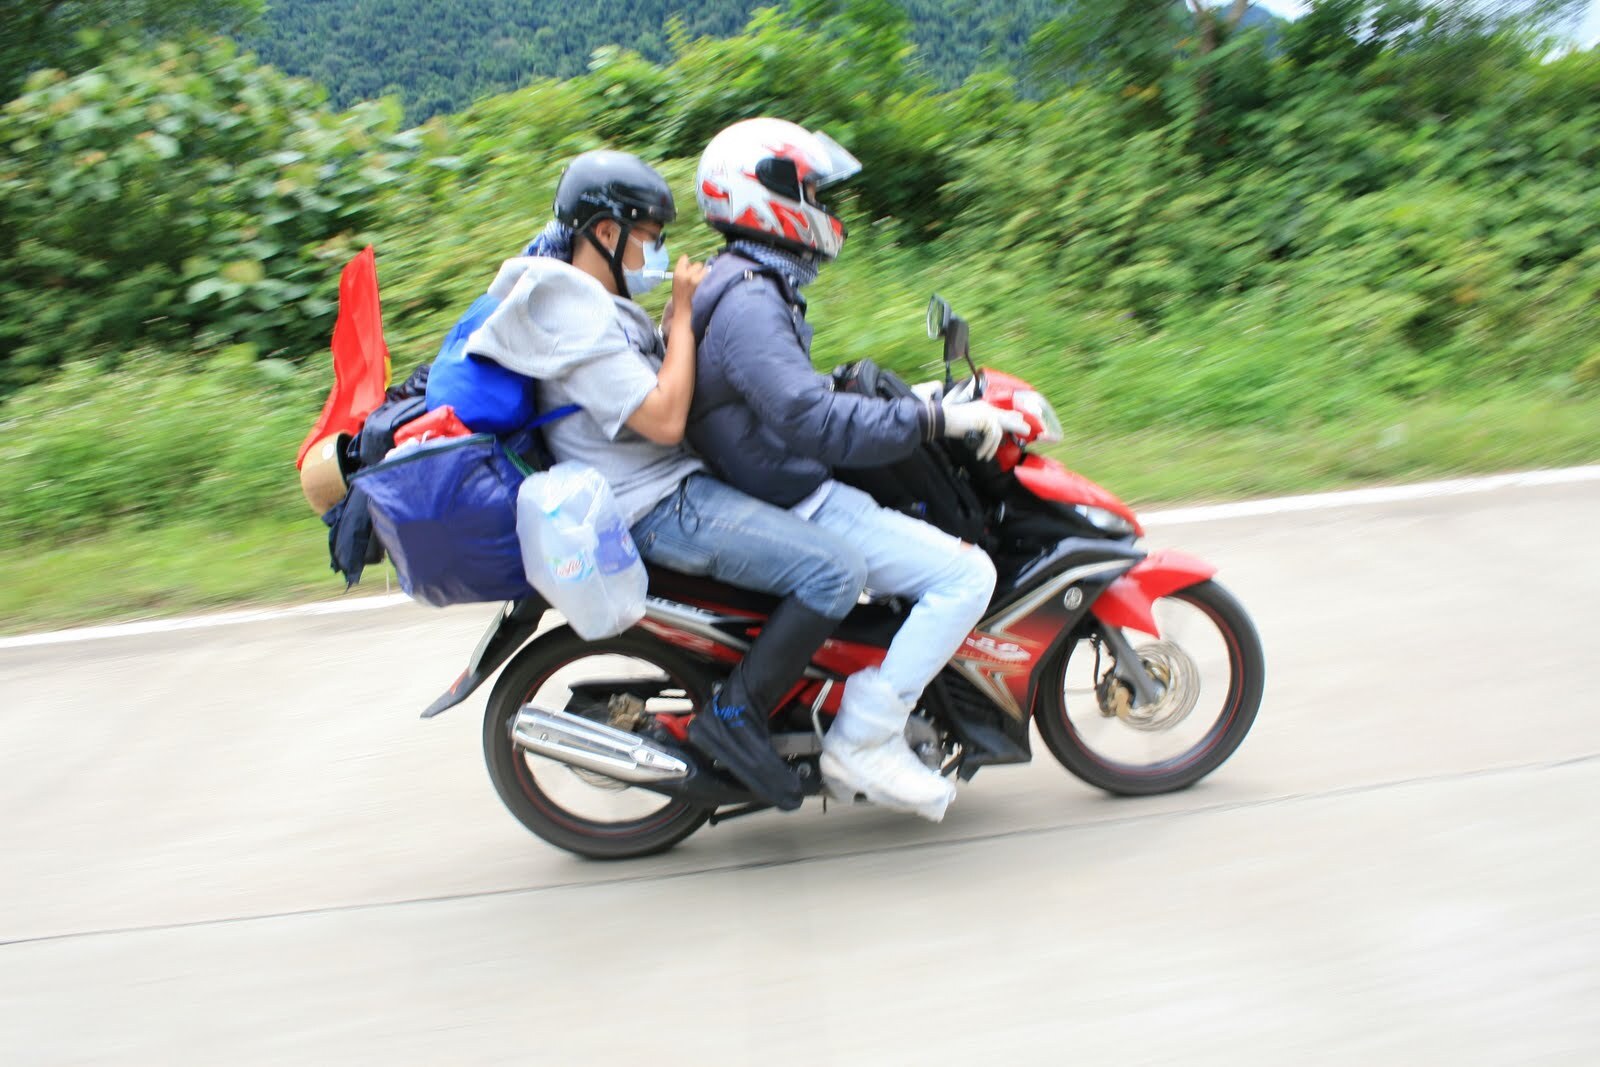 TOP 5 xe máy đi phượt cực khỏe cực bền được giới phượt thủ ưa chuộng   Trang thông tin điện tử Công Nghệ  Trangcongnghecomvn